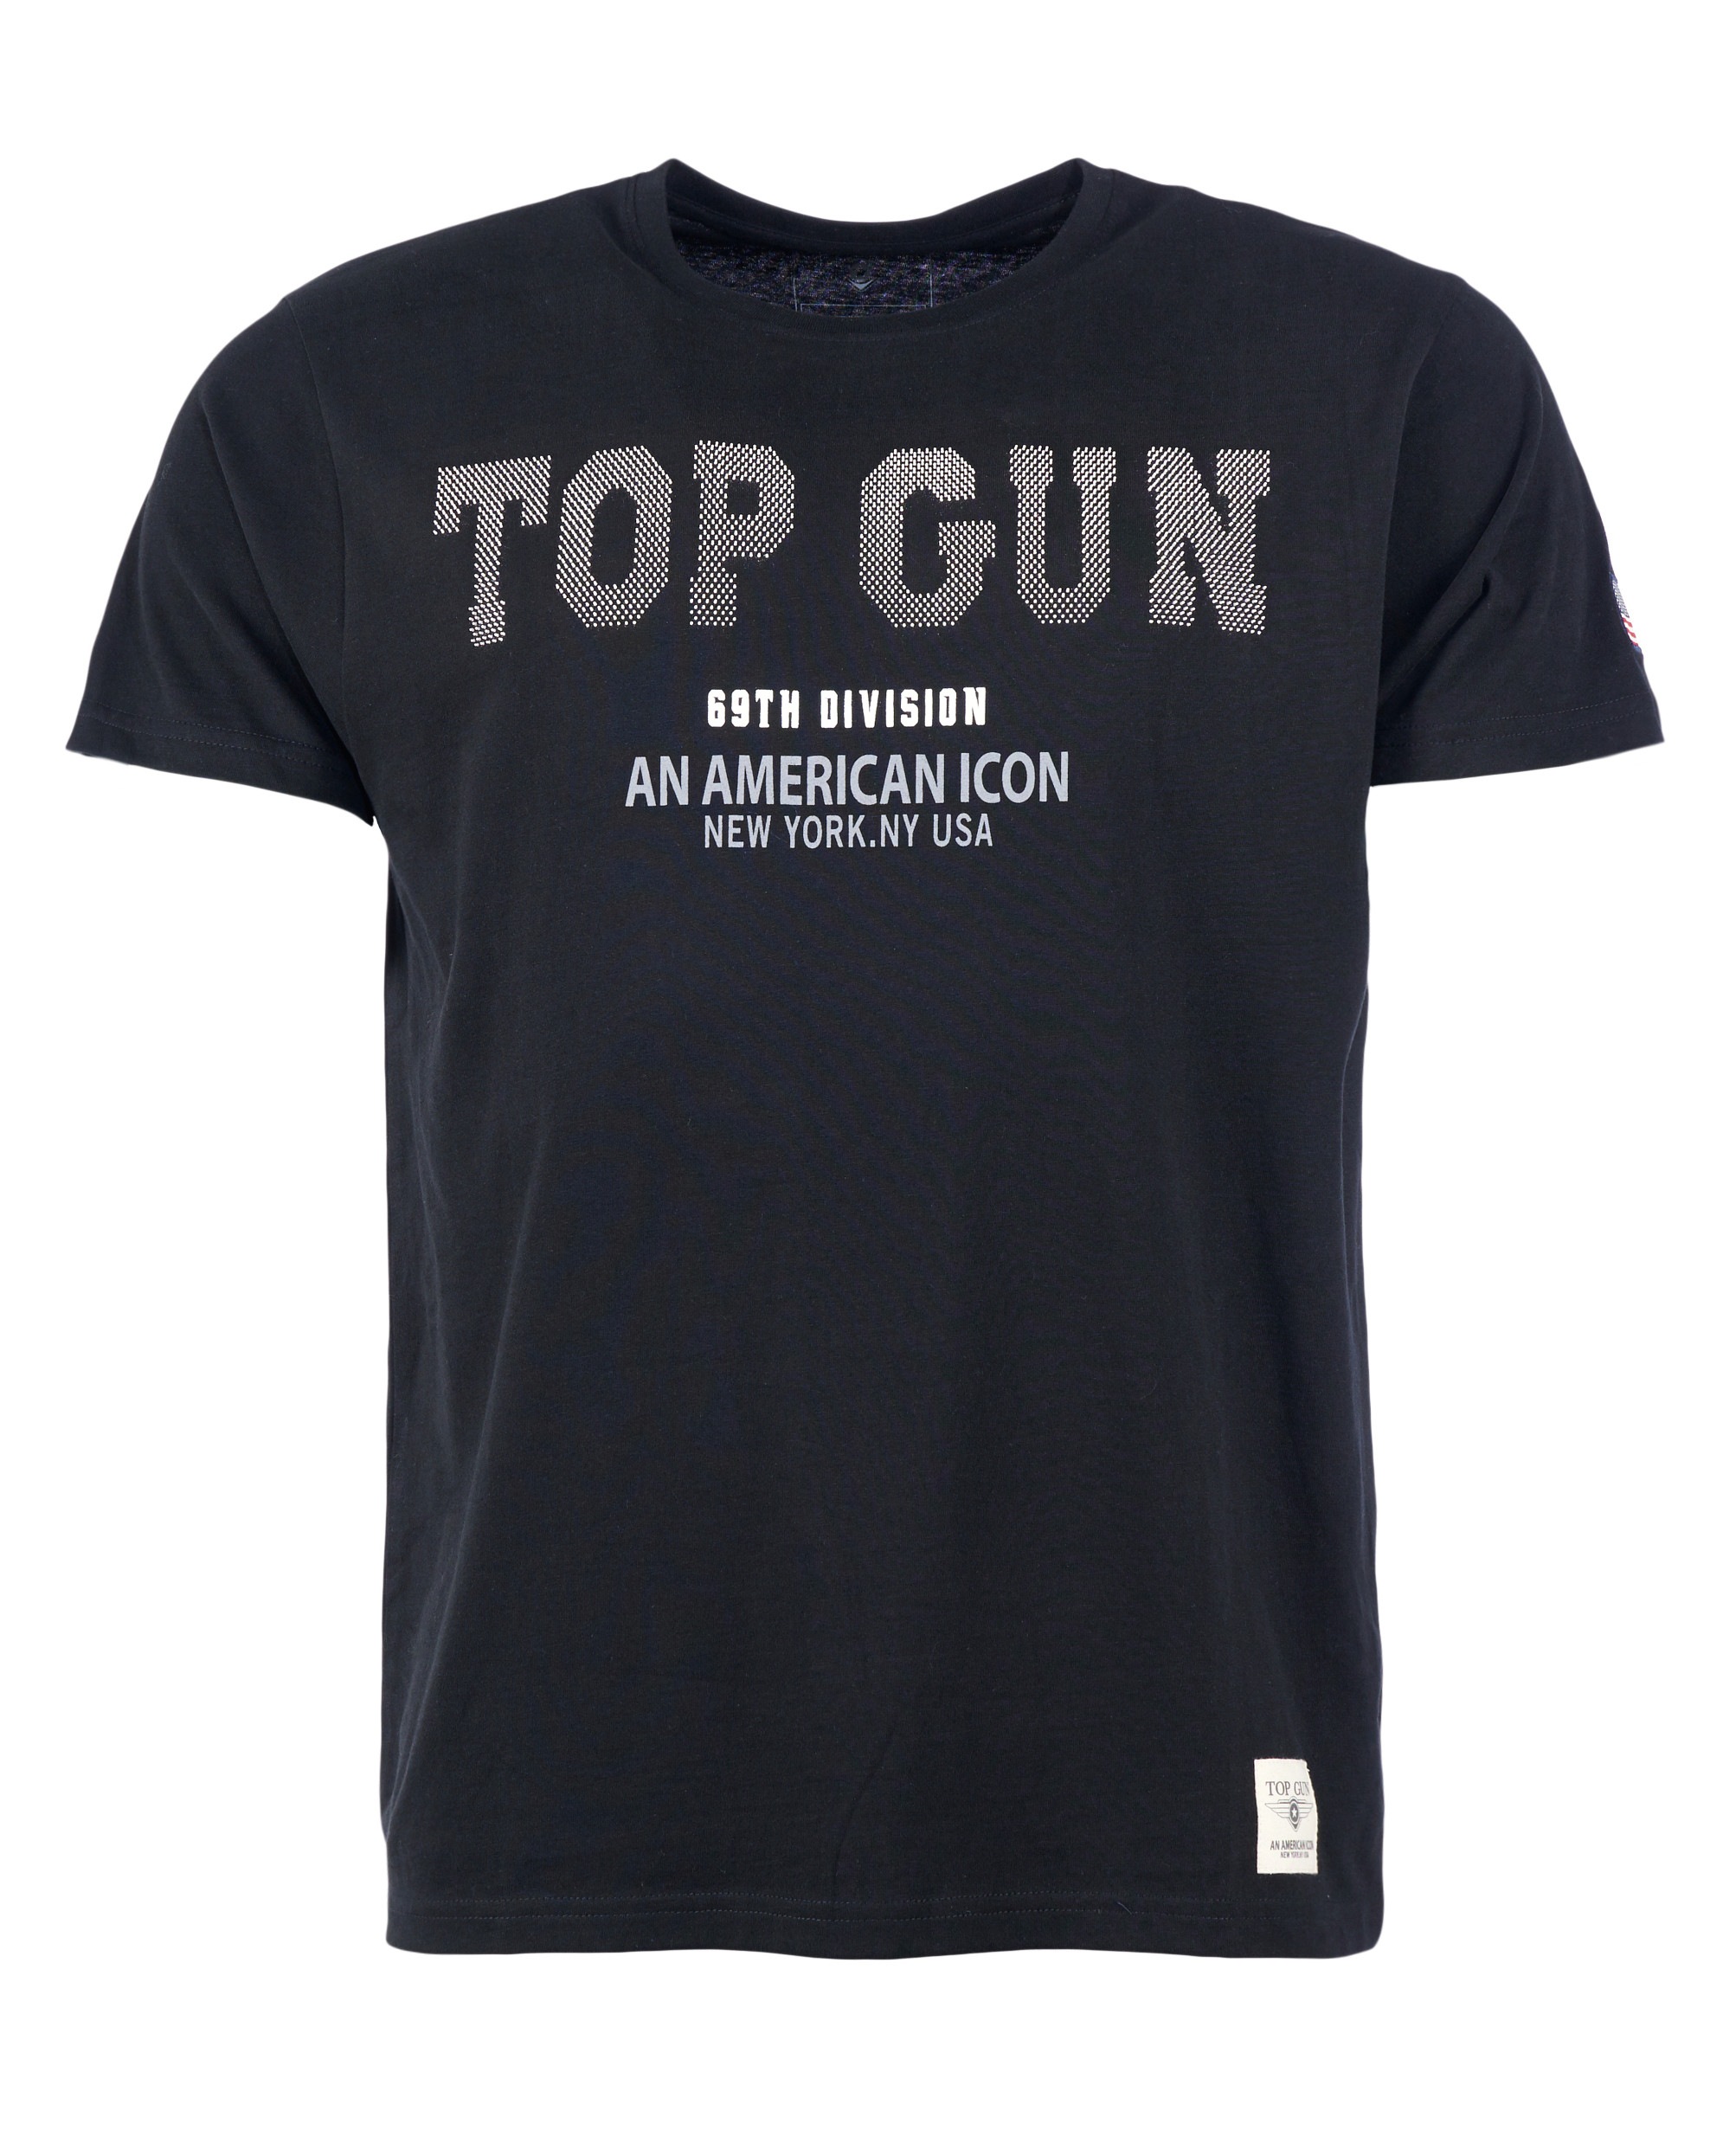 TOP GUN T-Shirt »T-Shirt TG20213006«